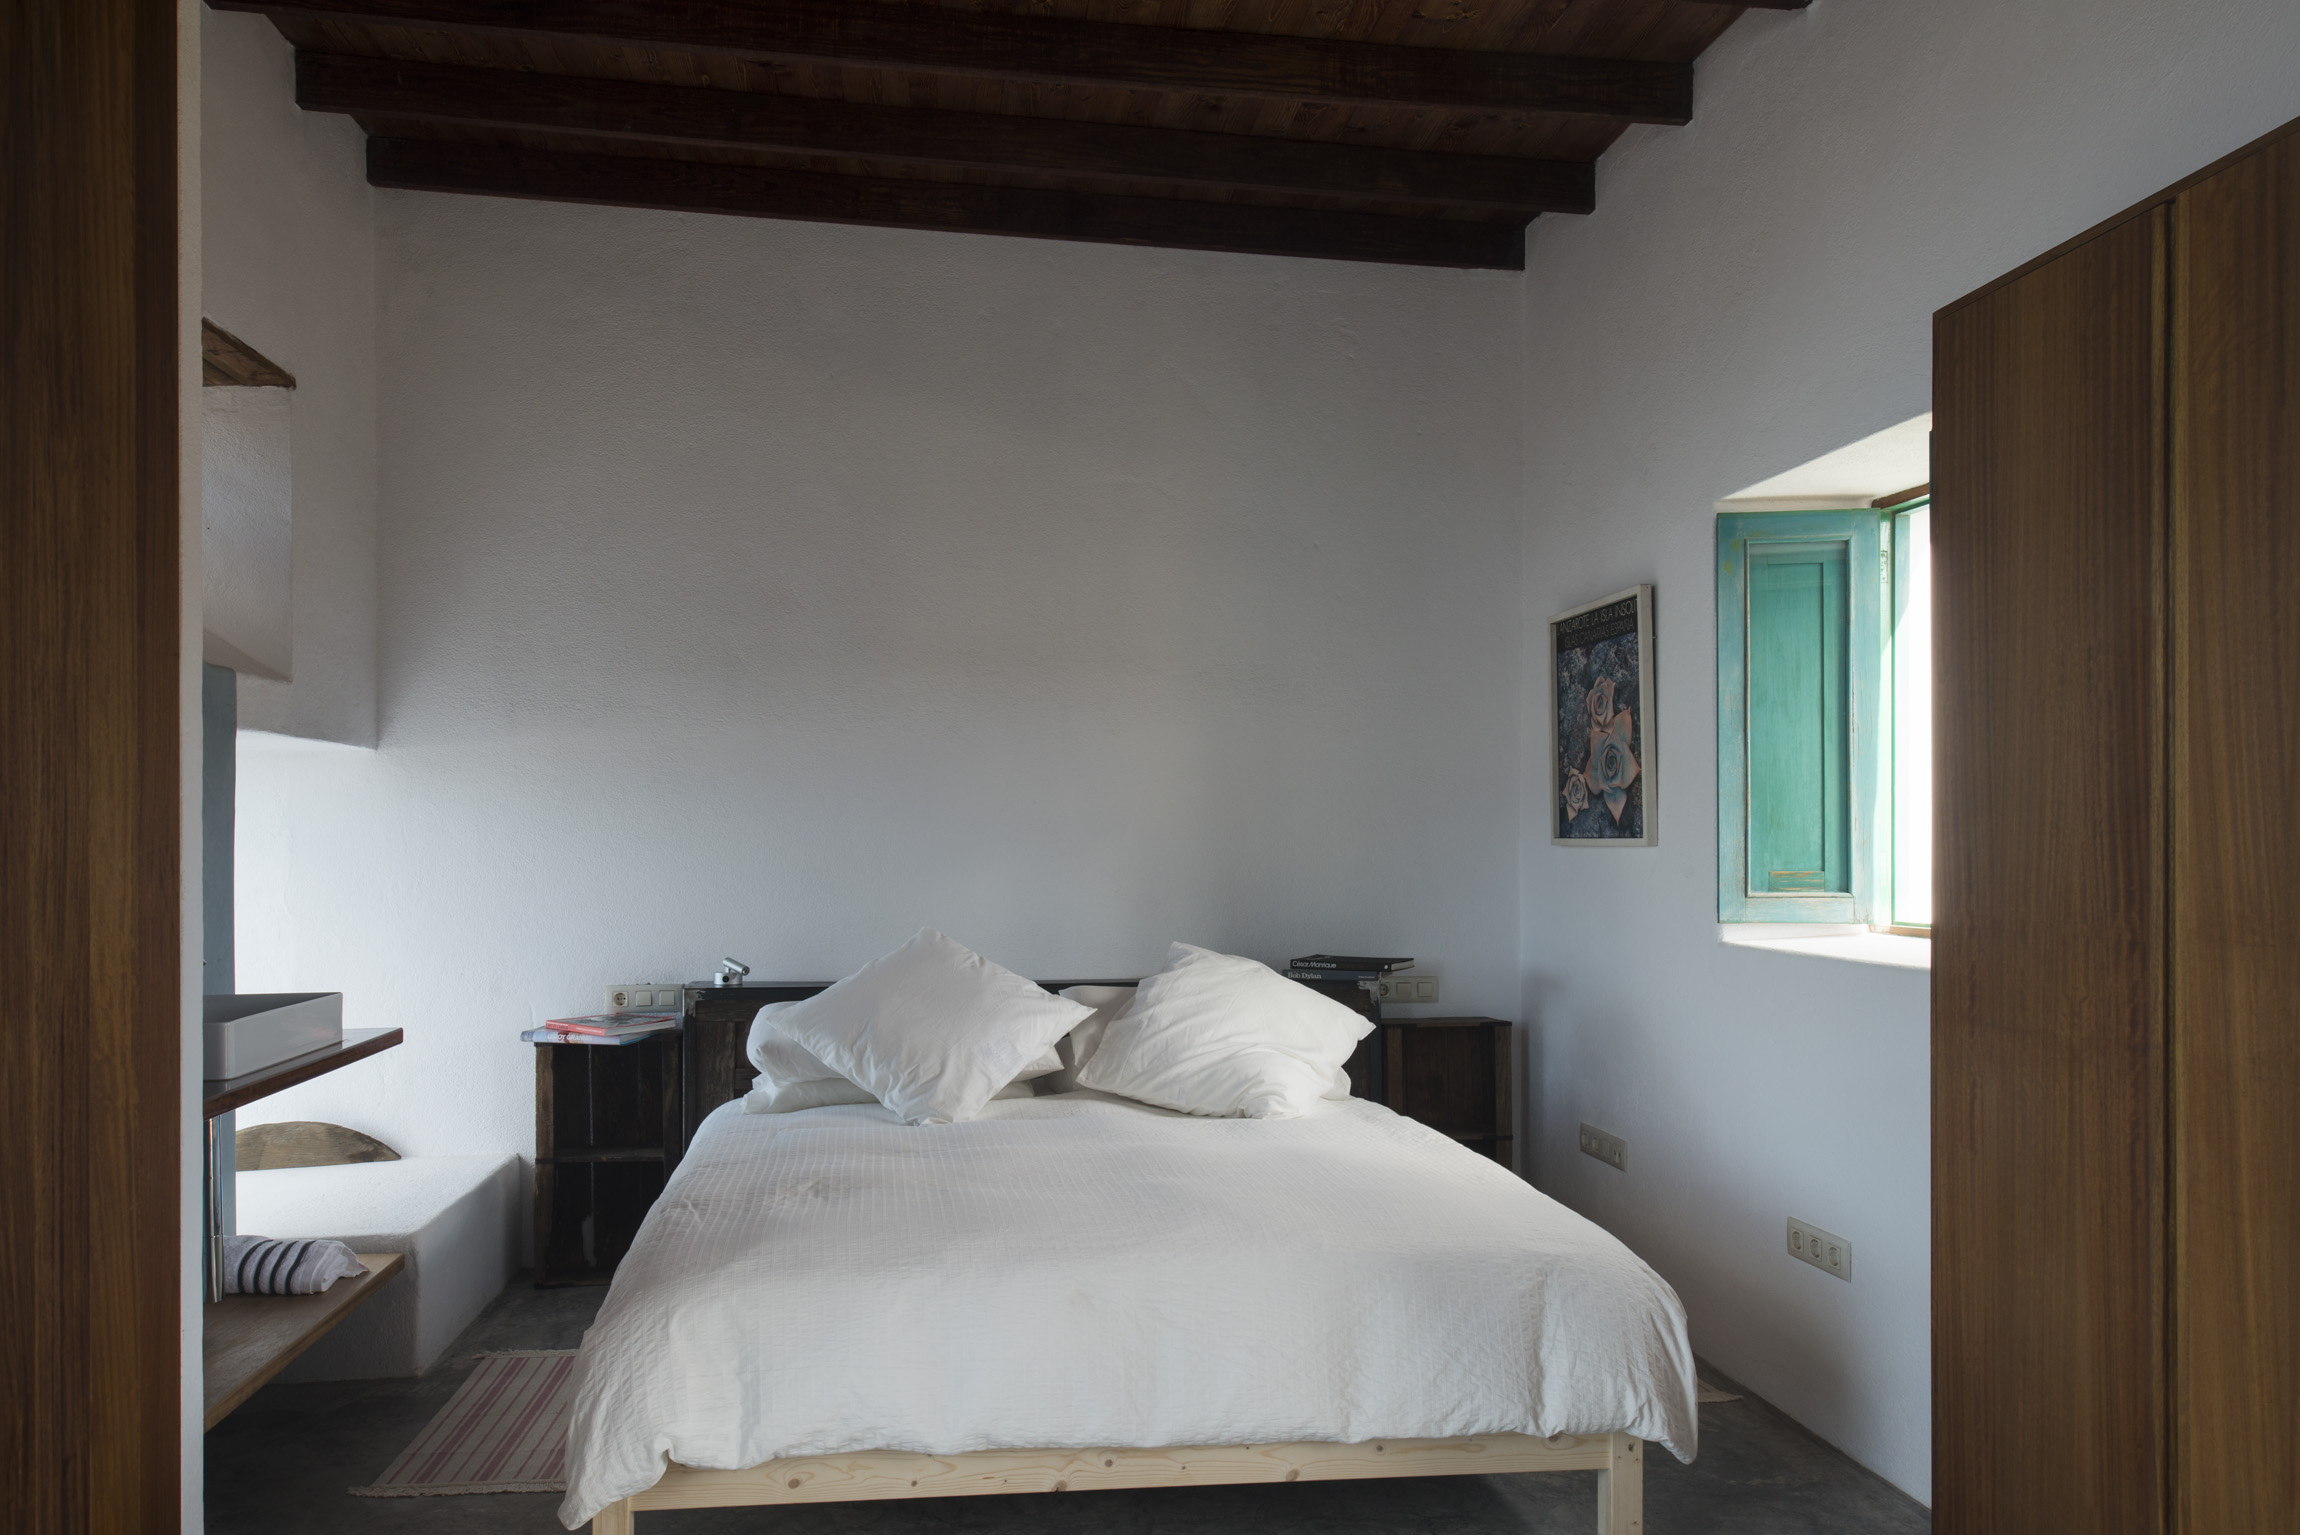 Buenavista Lanzarote Country Suites casa oeste bedroom 1